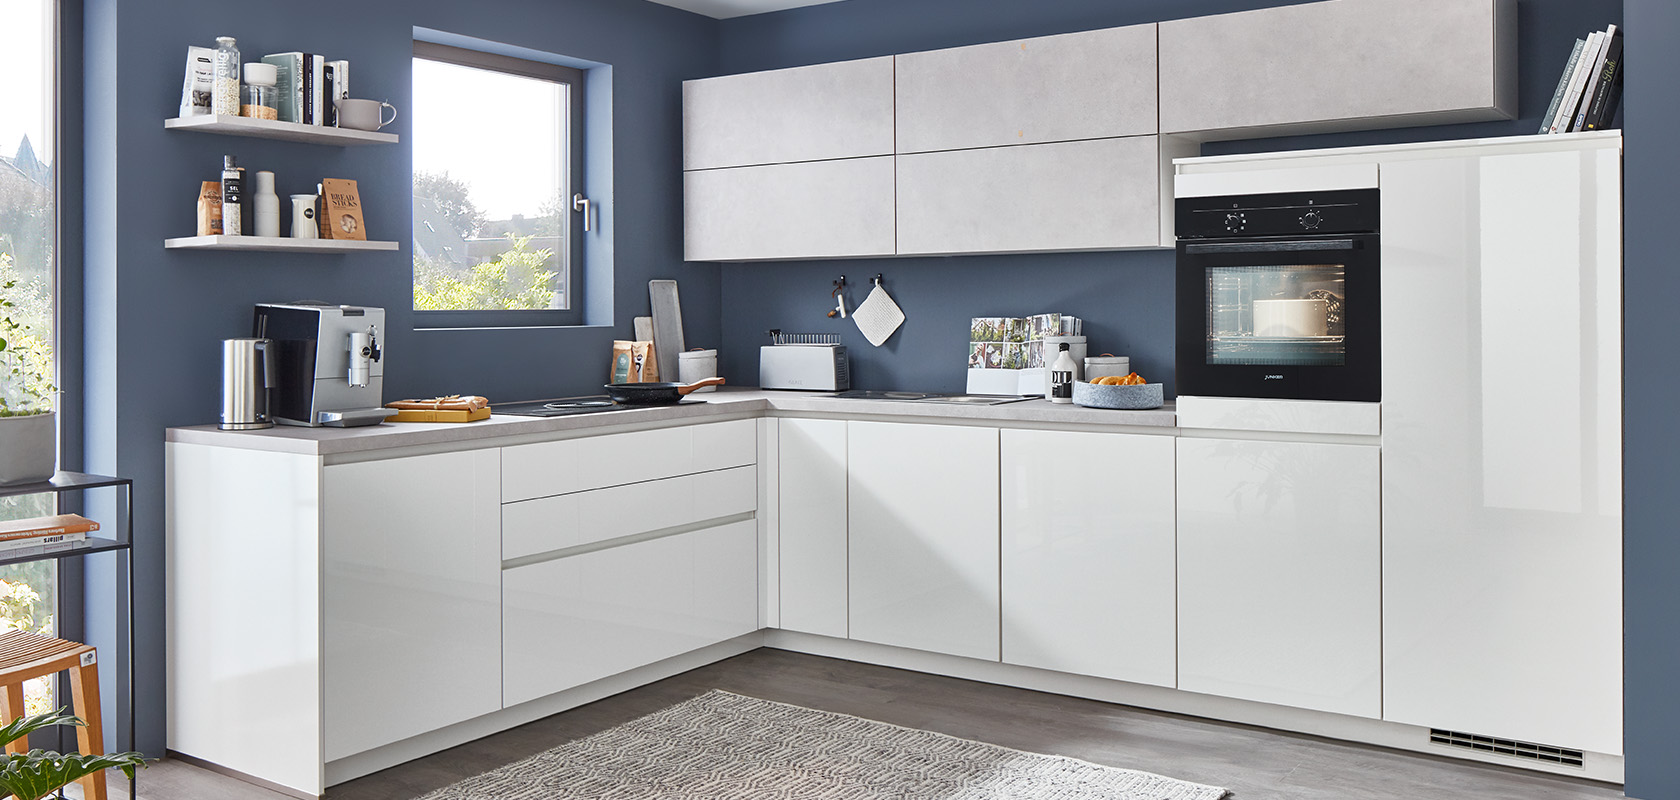 Moderne keuken met witte kasten, strakke apparaten en grijze accenten. Een netjes georganiseerde ruimte met een minimalistische esthetiek en een comfortabele, uitnodigende sfeer.